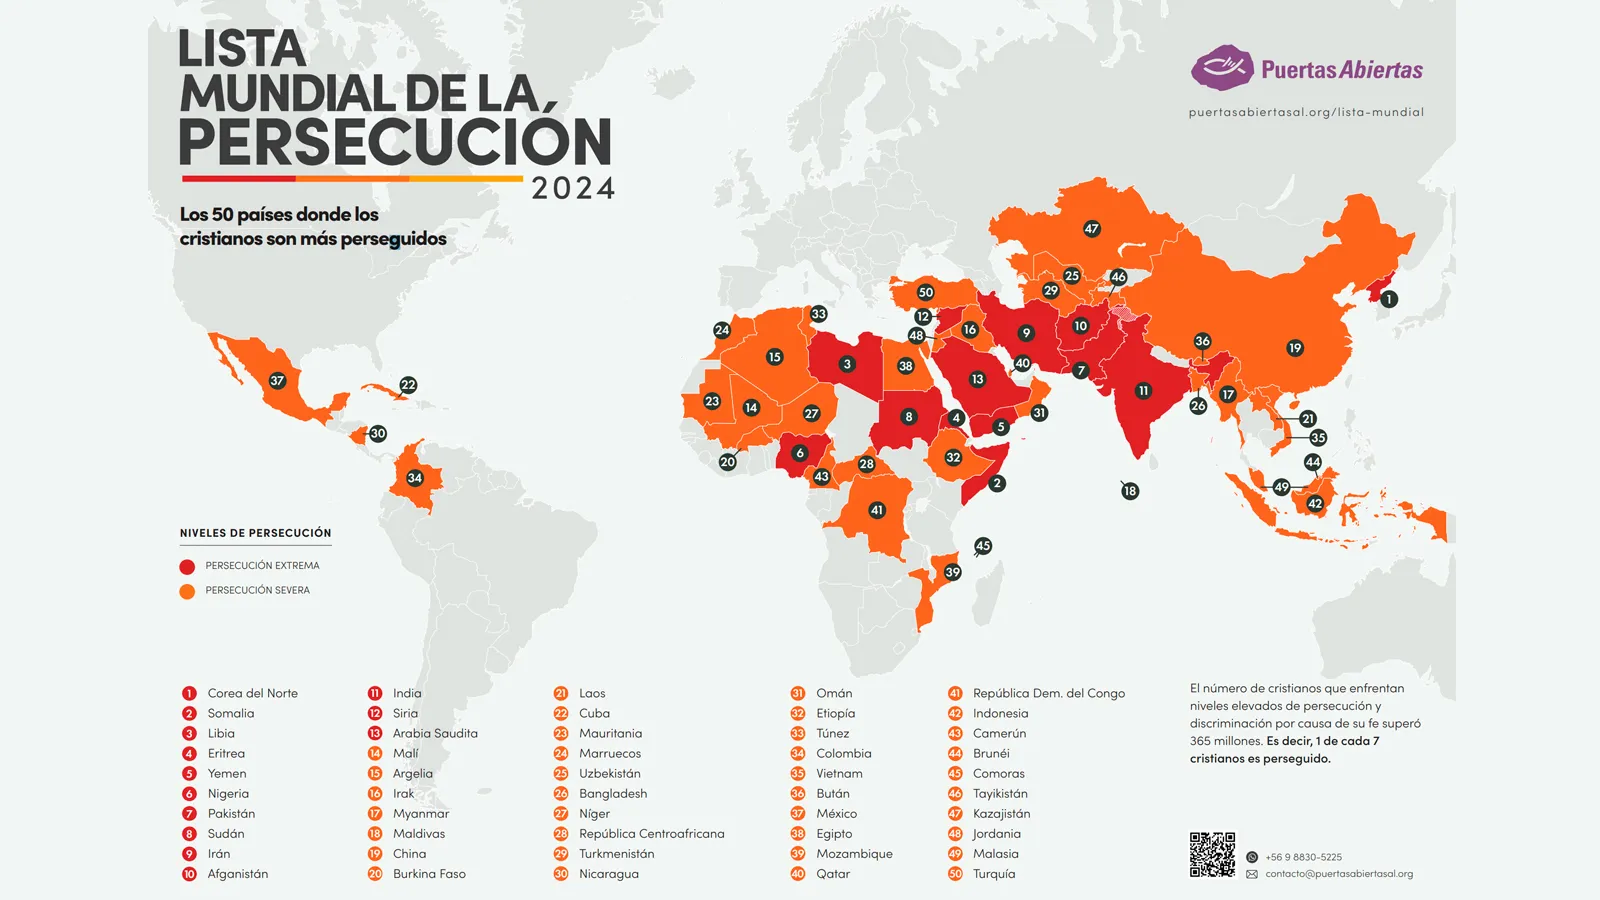 La lista está compuesta por 50 países en total: 13 naciones en donde los cristianos sufren persecución extrema y otras 37 en donde la persecución es severa.?w=200&h=150